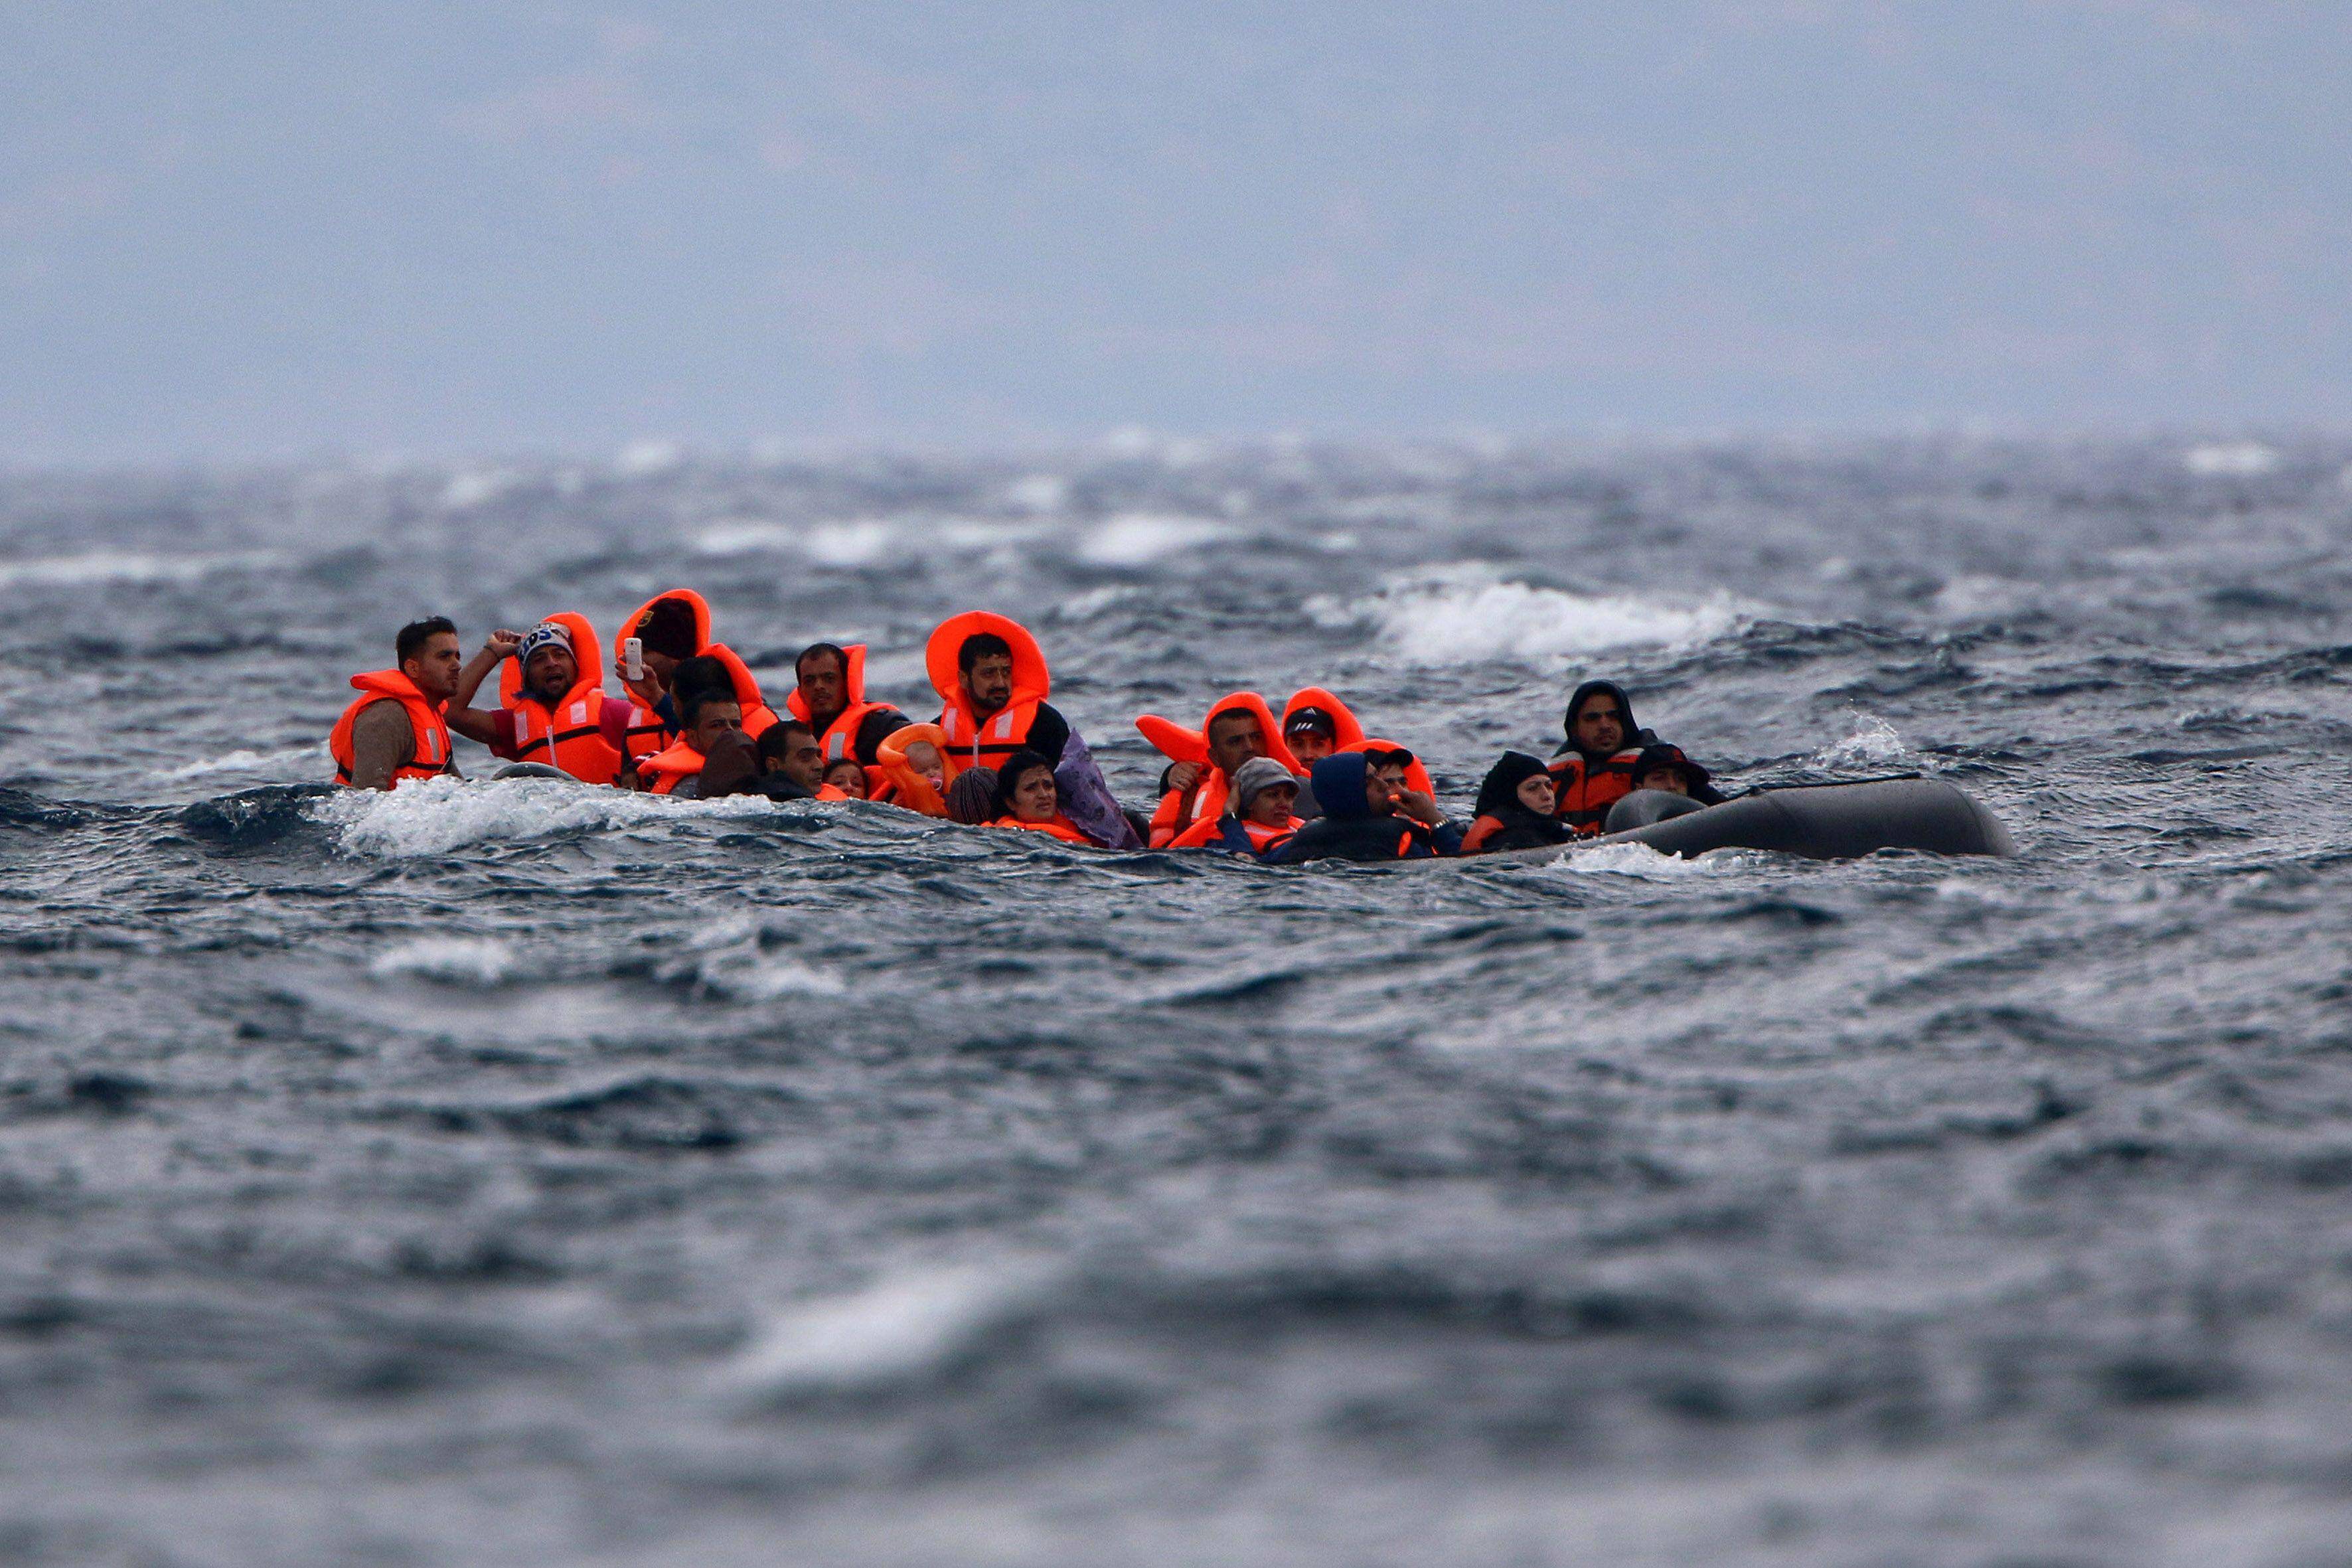 Πάνω από 600 μετανάστες πνίγηκαν στη Μεσόγειο τους τέσσερις τελευταίους μήνες